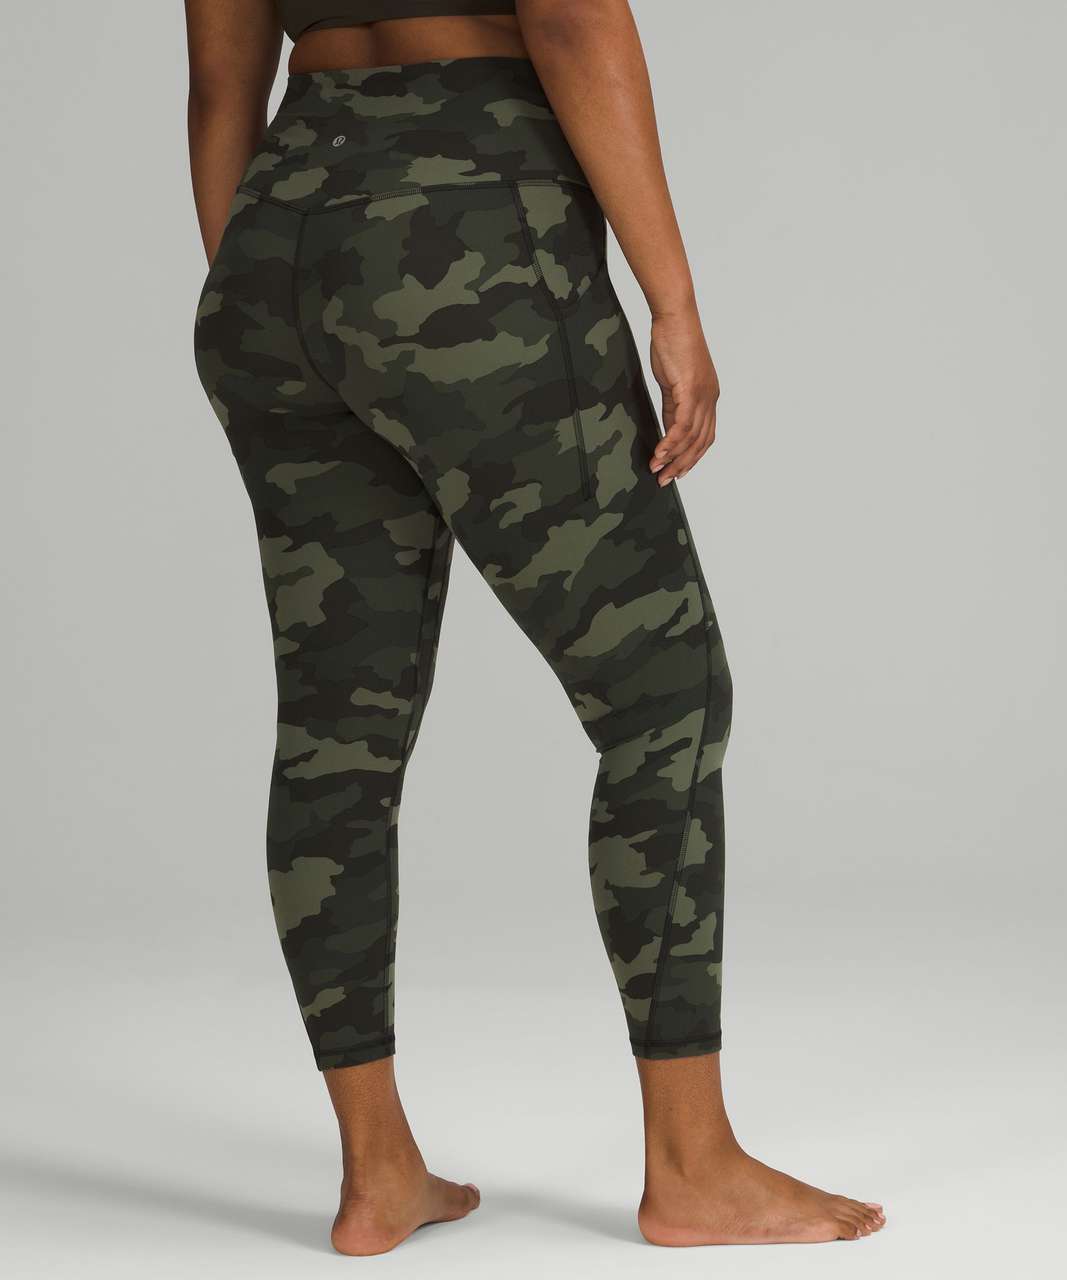 Lululemon Align leggings size 2 women’s Camouflage high rise Green Full  Length